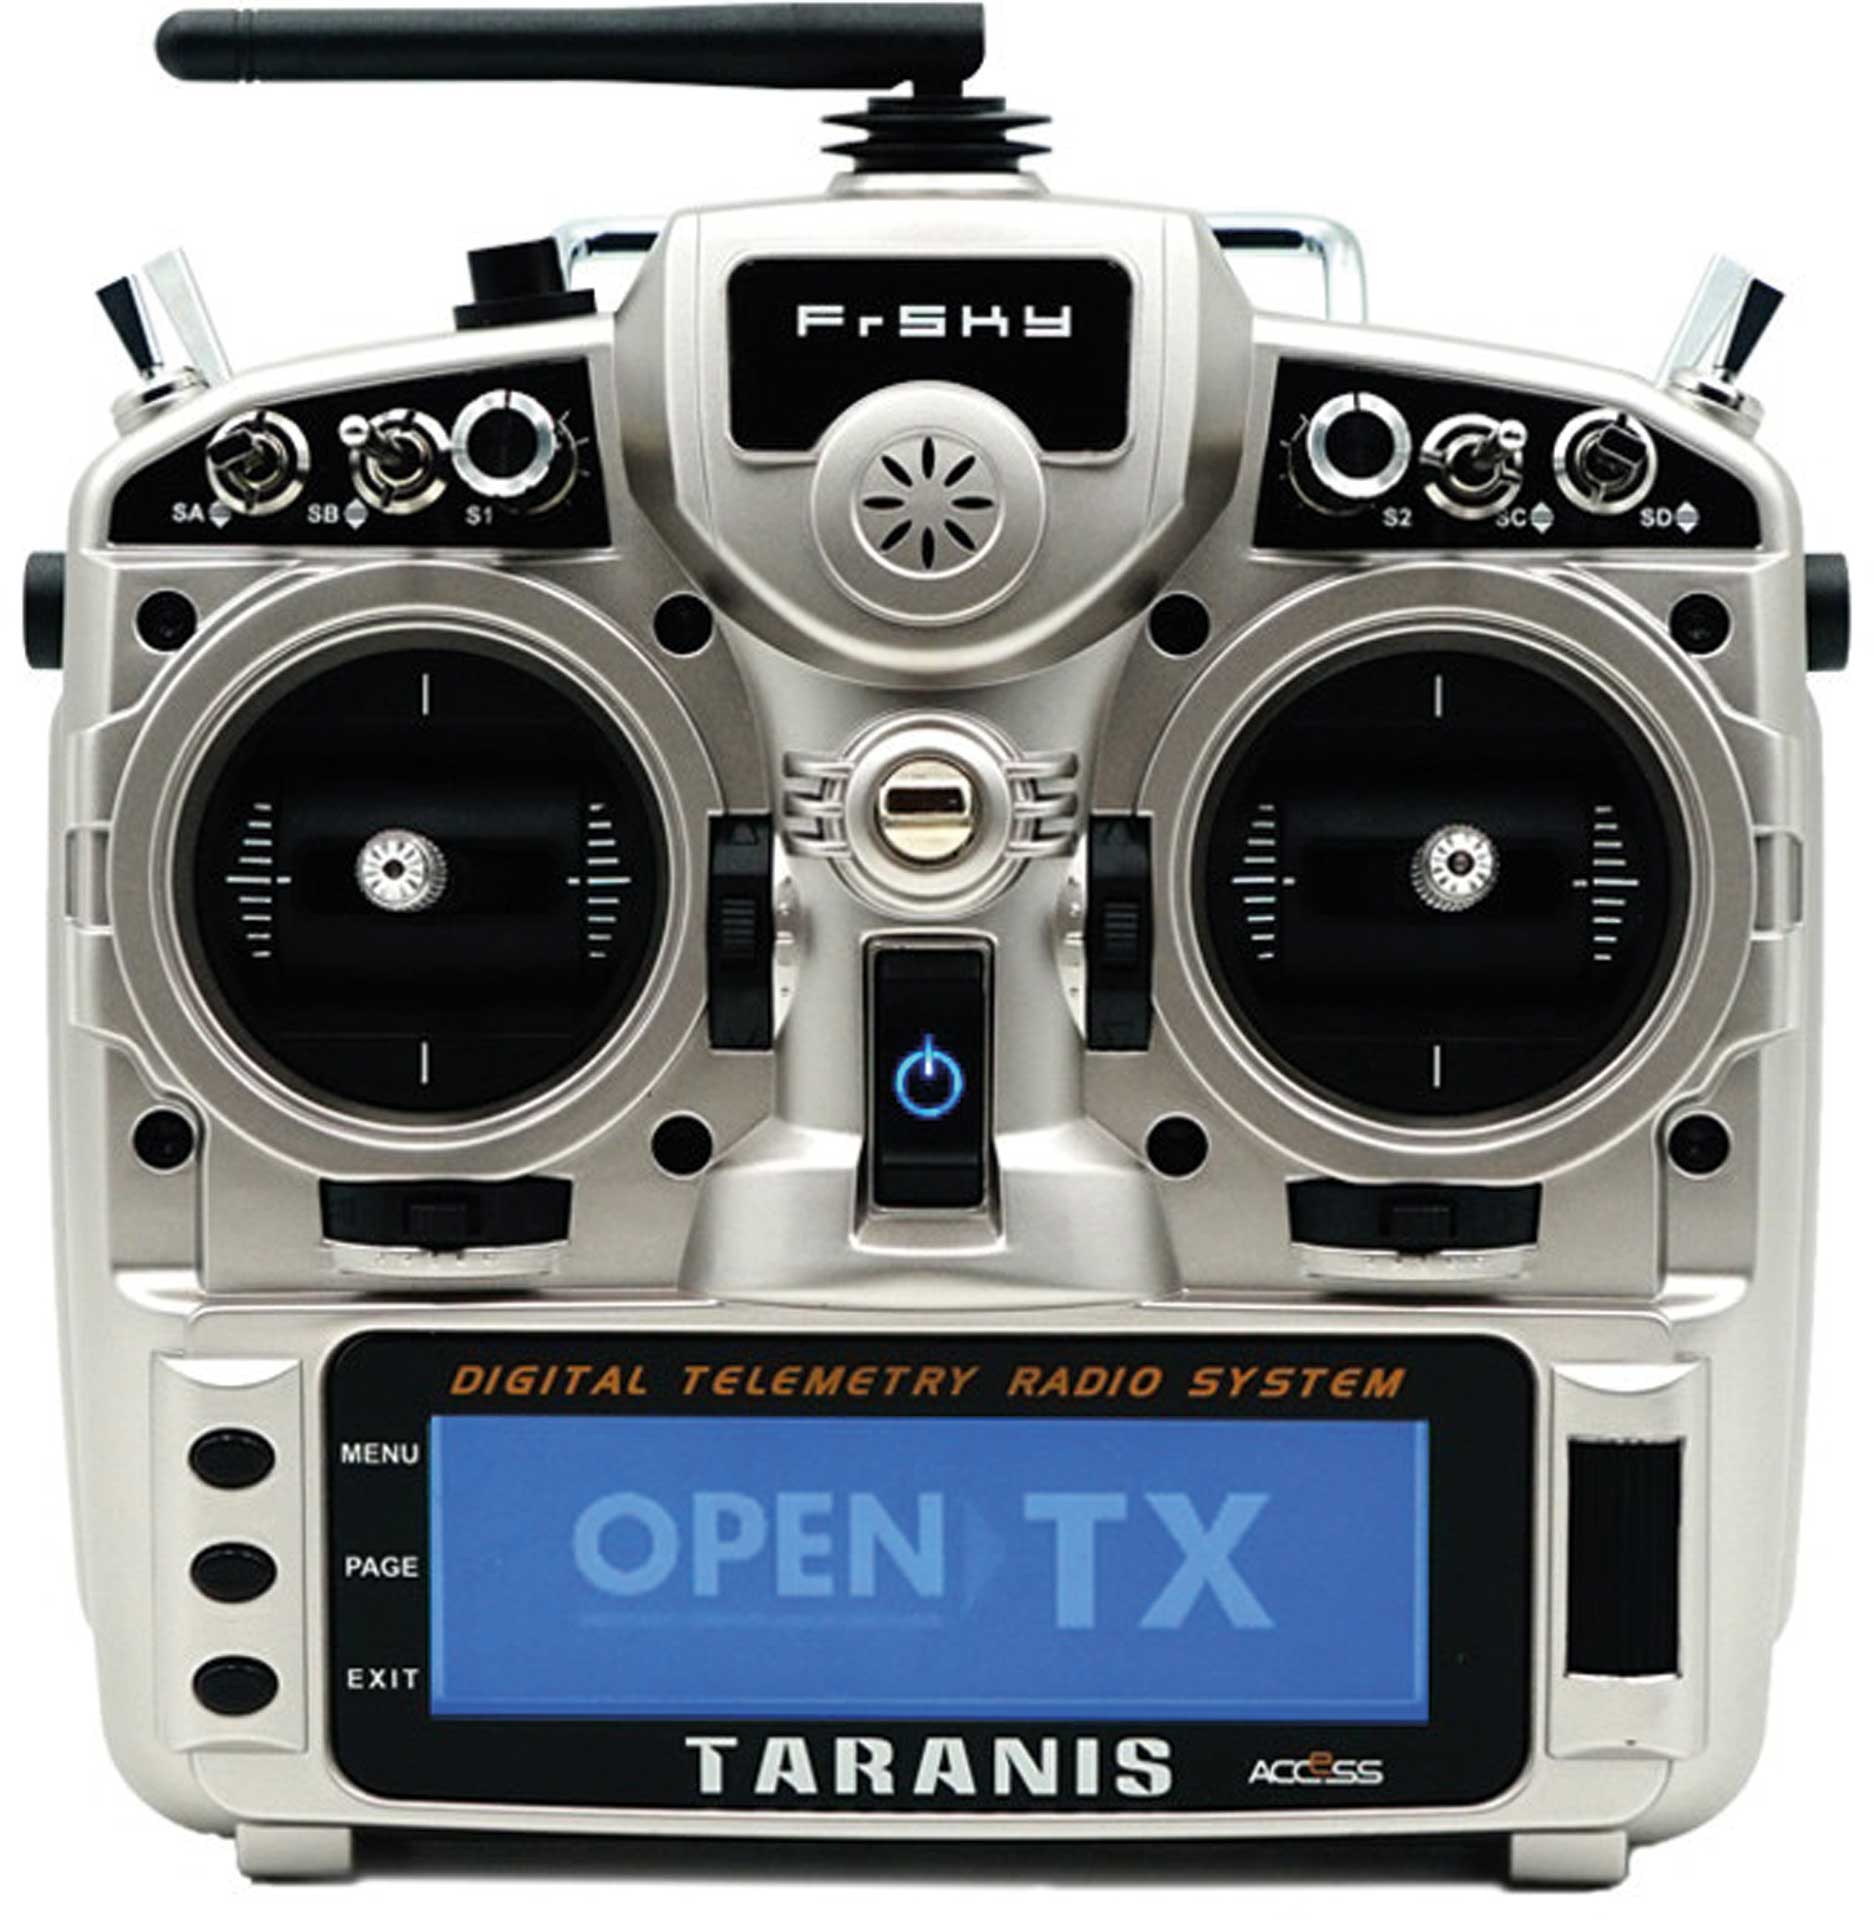 TARANIS X9D plus 2019 EU/LBT FrSky Kit émetteur Silver 2,4Ghz avec carte SD, sans accu, menu/langue en allemand